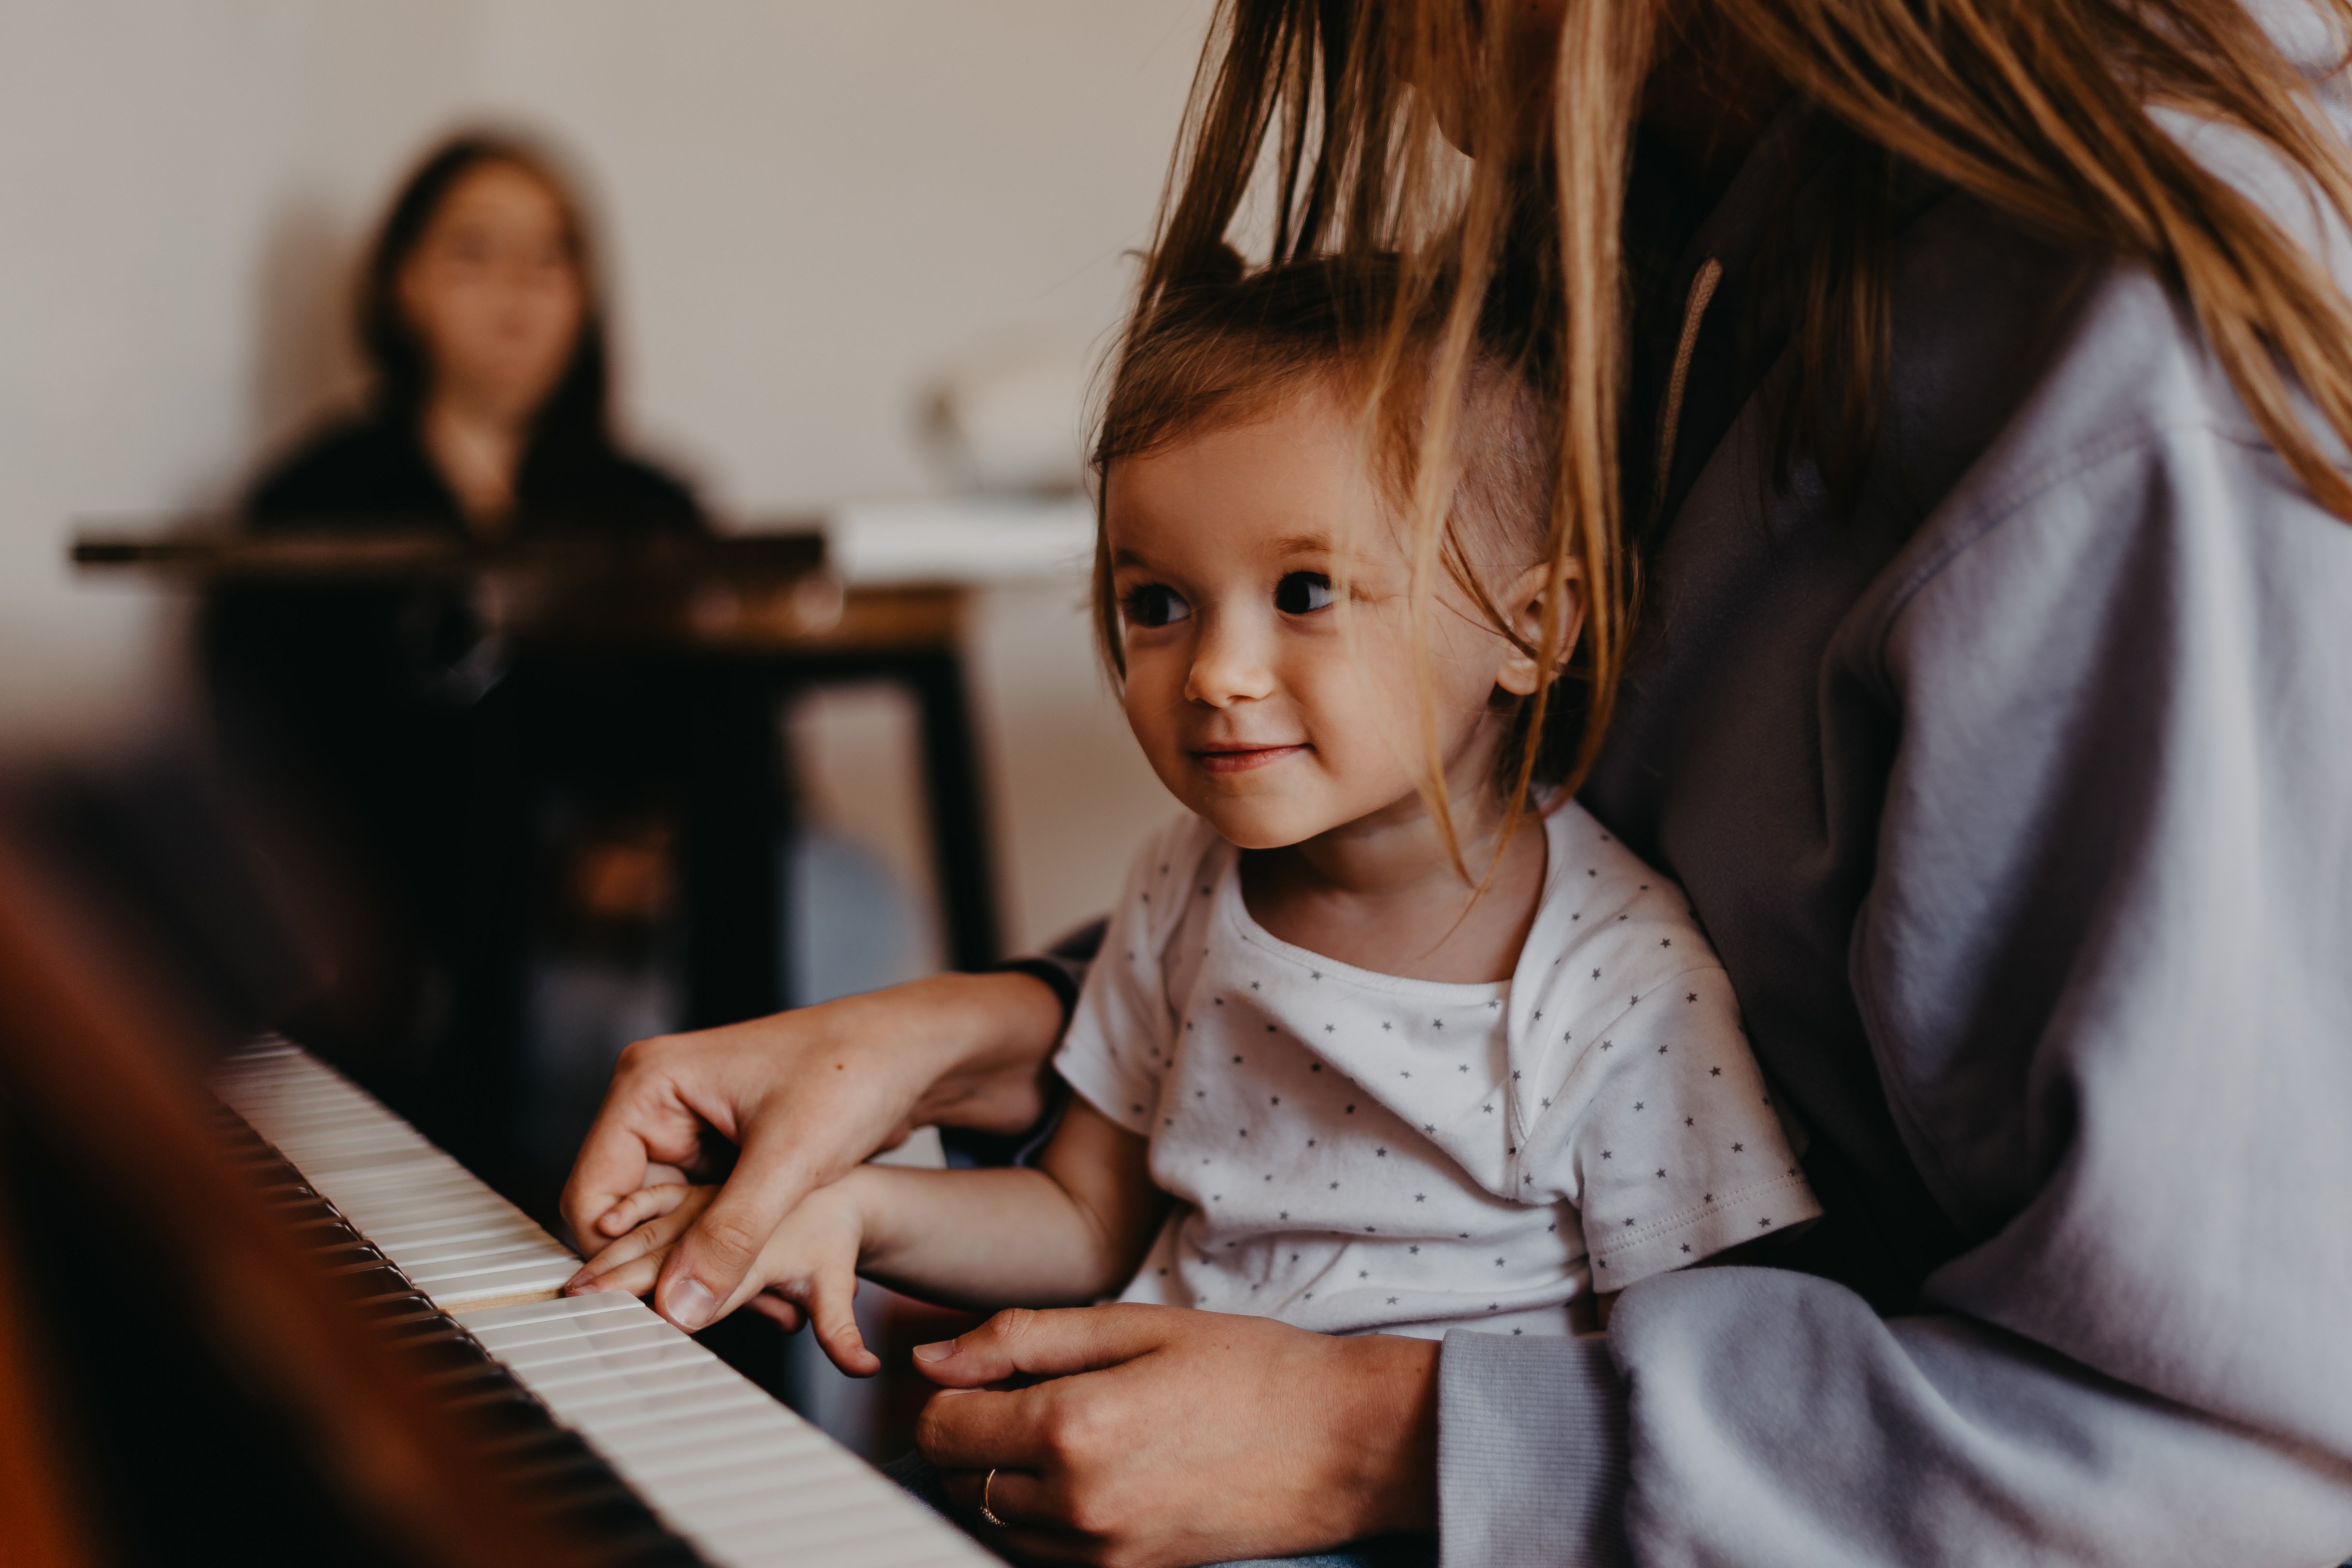 Jouer de la musique améliore les capacités de l'enfant !